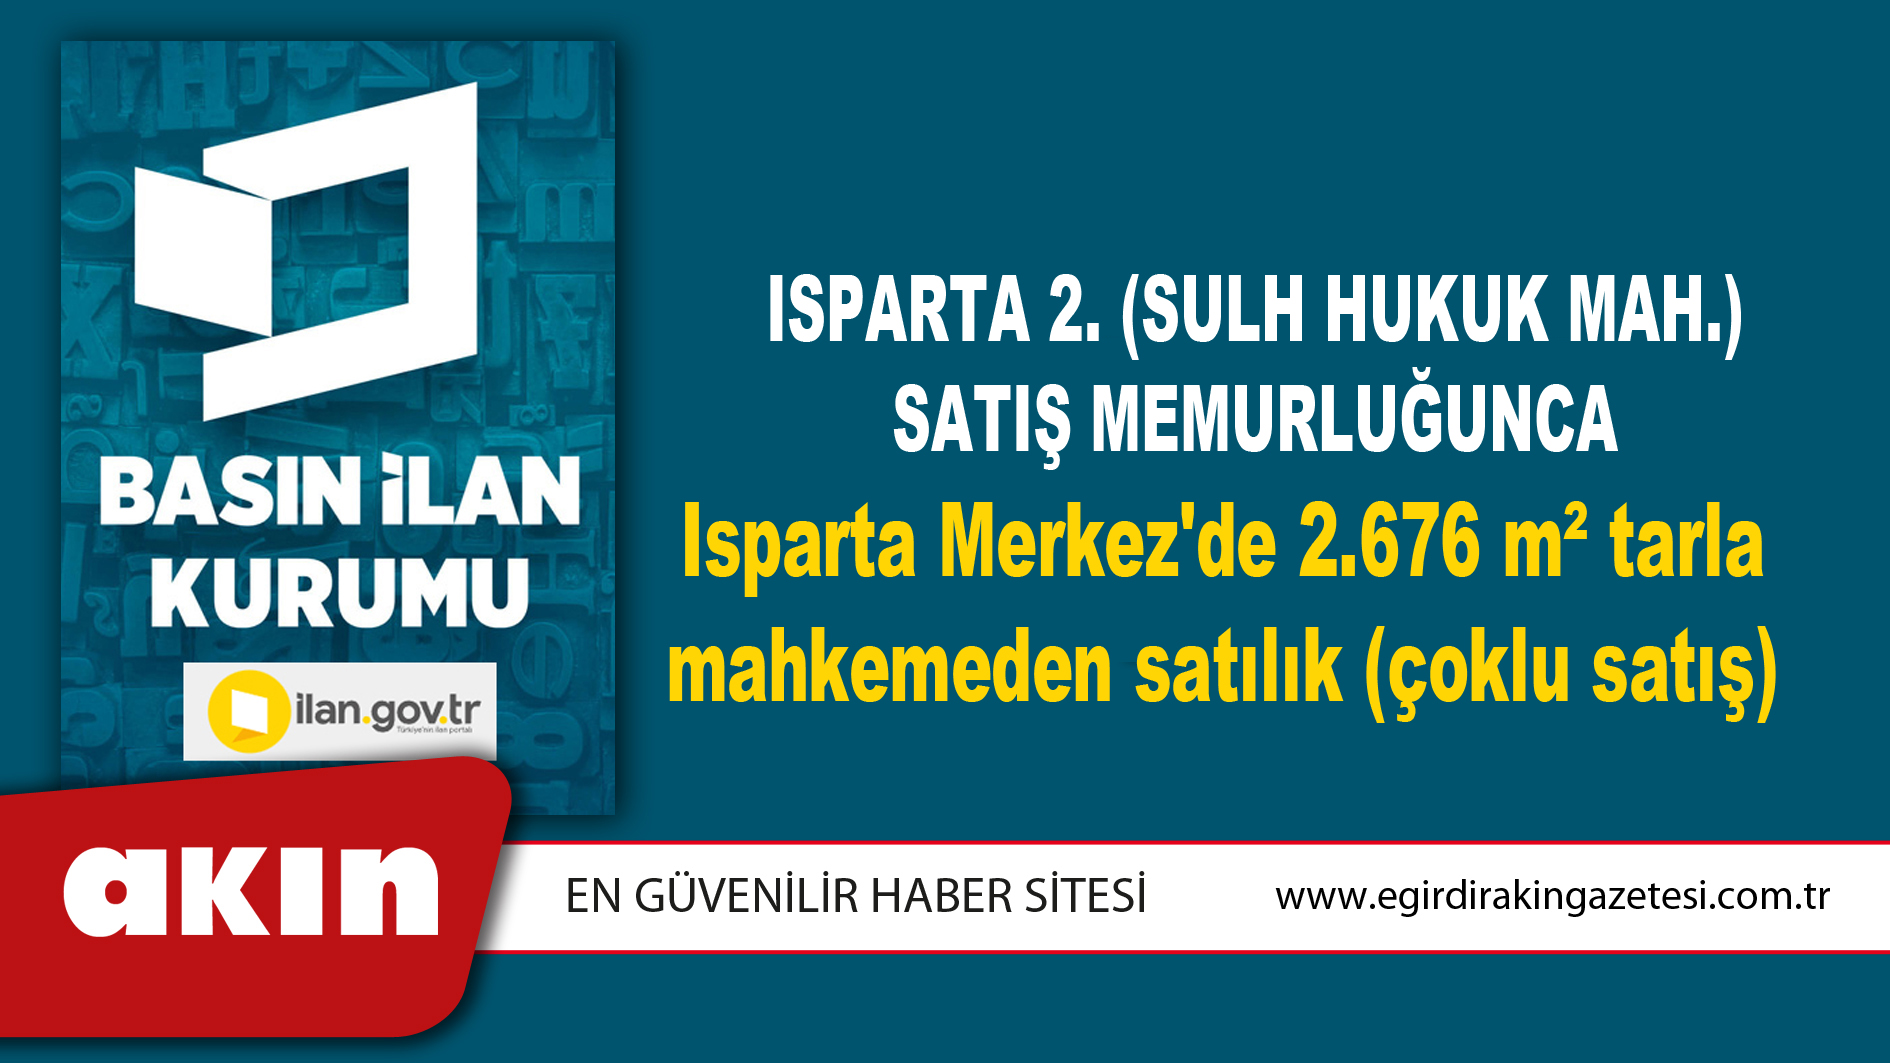 Isparta 2. (Sulh Hukuk Mah.) Satış Memurluğunca Isparta Merkez'de 2.676 m² tarla mahkemeden satılık (çoklu satış)